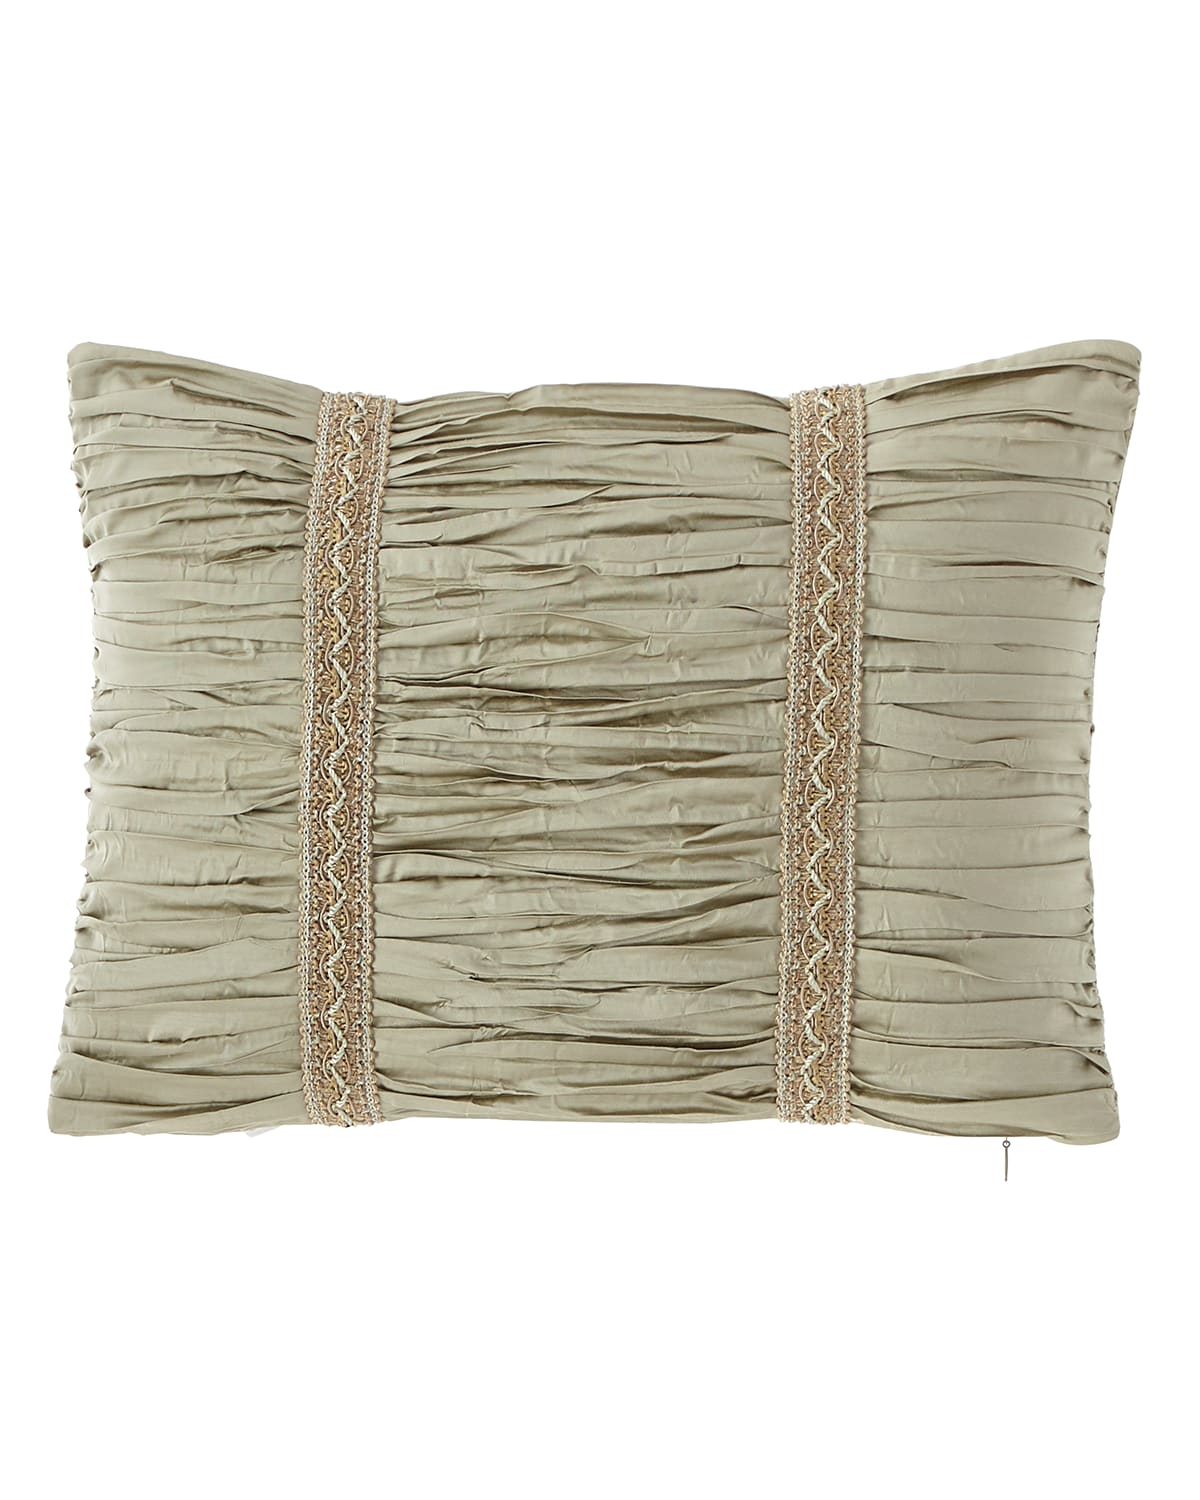 Image Austin Horn Collection Laurel Boudoir Pillow, 12" x 16"